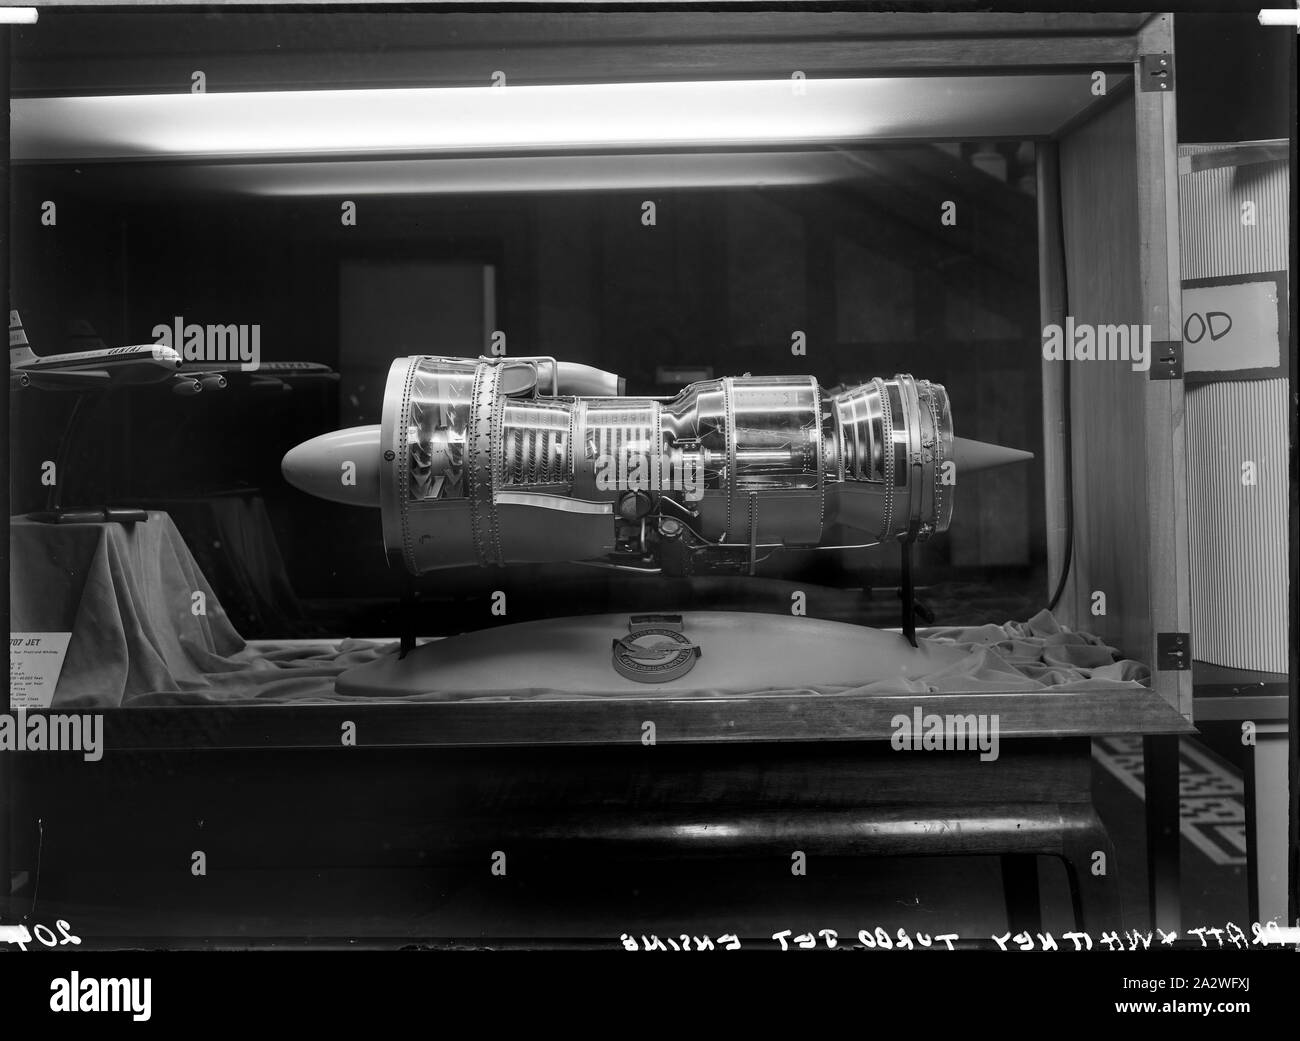 Négatif sur verre - Pratt & Whitney moteur Turbo Jet, le Musée des sciences (Science Museum), Melbourne, vers 1950, photographie de Pratt & Whitney moteur Turbo Jet au Musée des sciences appliquées, Swanston Street, vers 1950 Banque D'Images